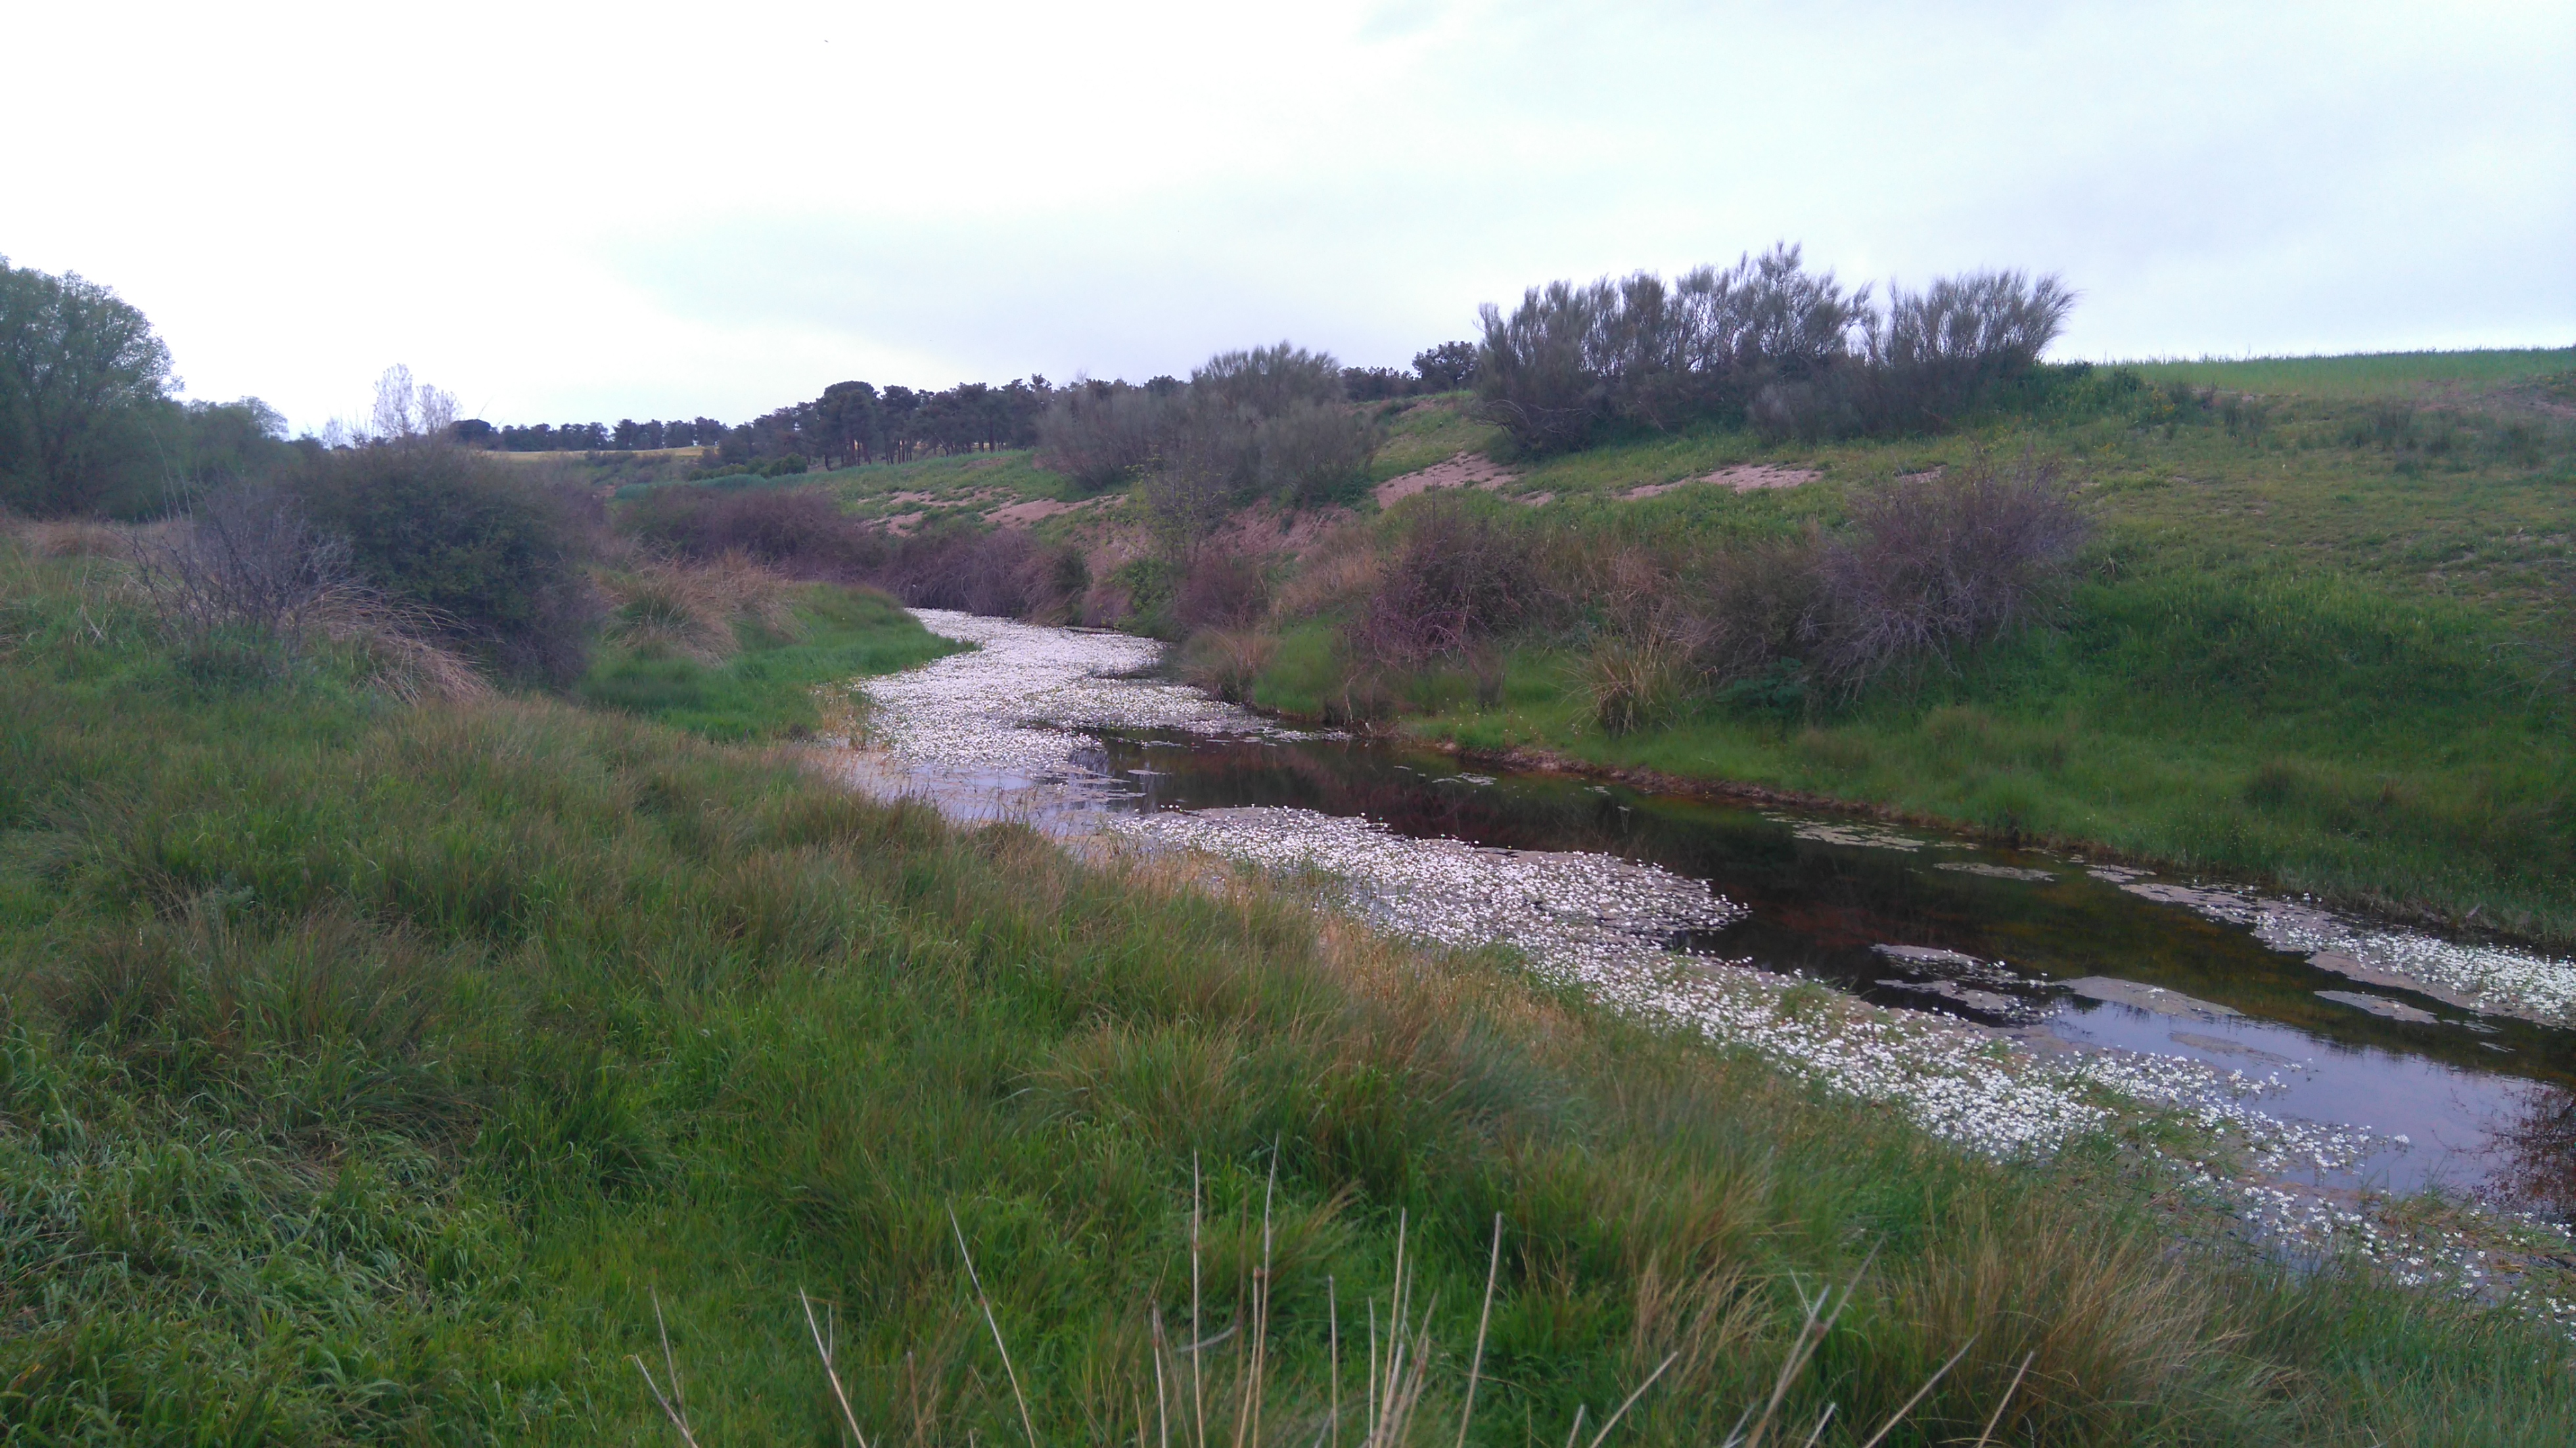 La CHD adjudica por 1,7 M€ el contrato de las obras de restauración fluvial del río Arevalillo (Ávila)